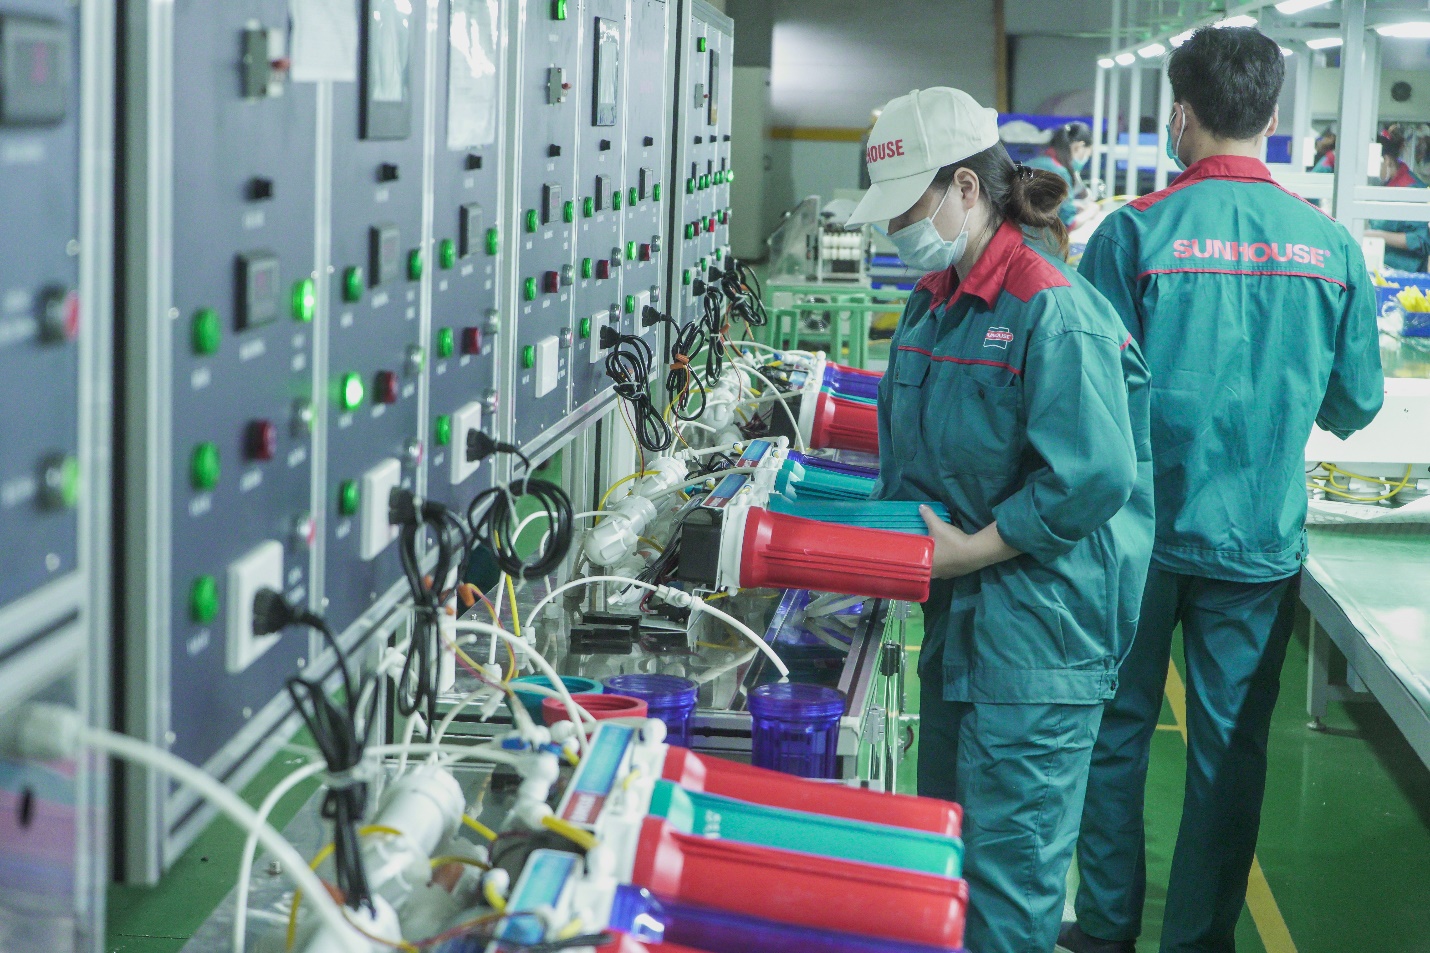 Nhà máy Sunhouse sản xuất máy lọc nước tinh khiết được yêu thích nhất năm 2022 - Ảnh 3.